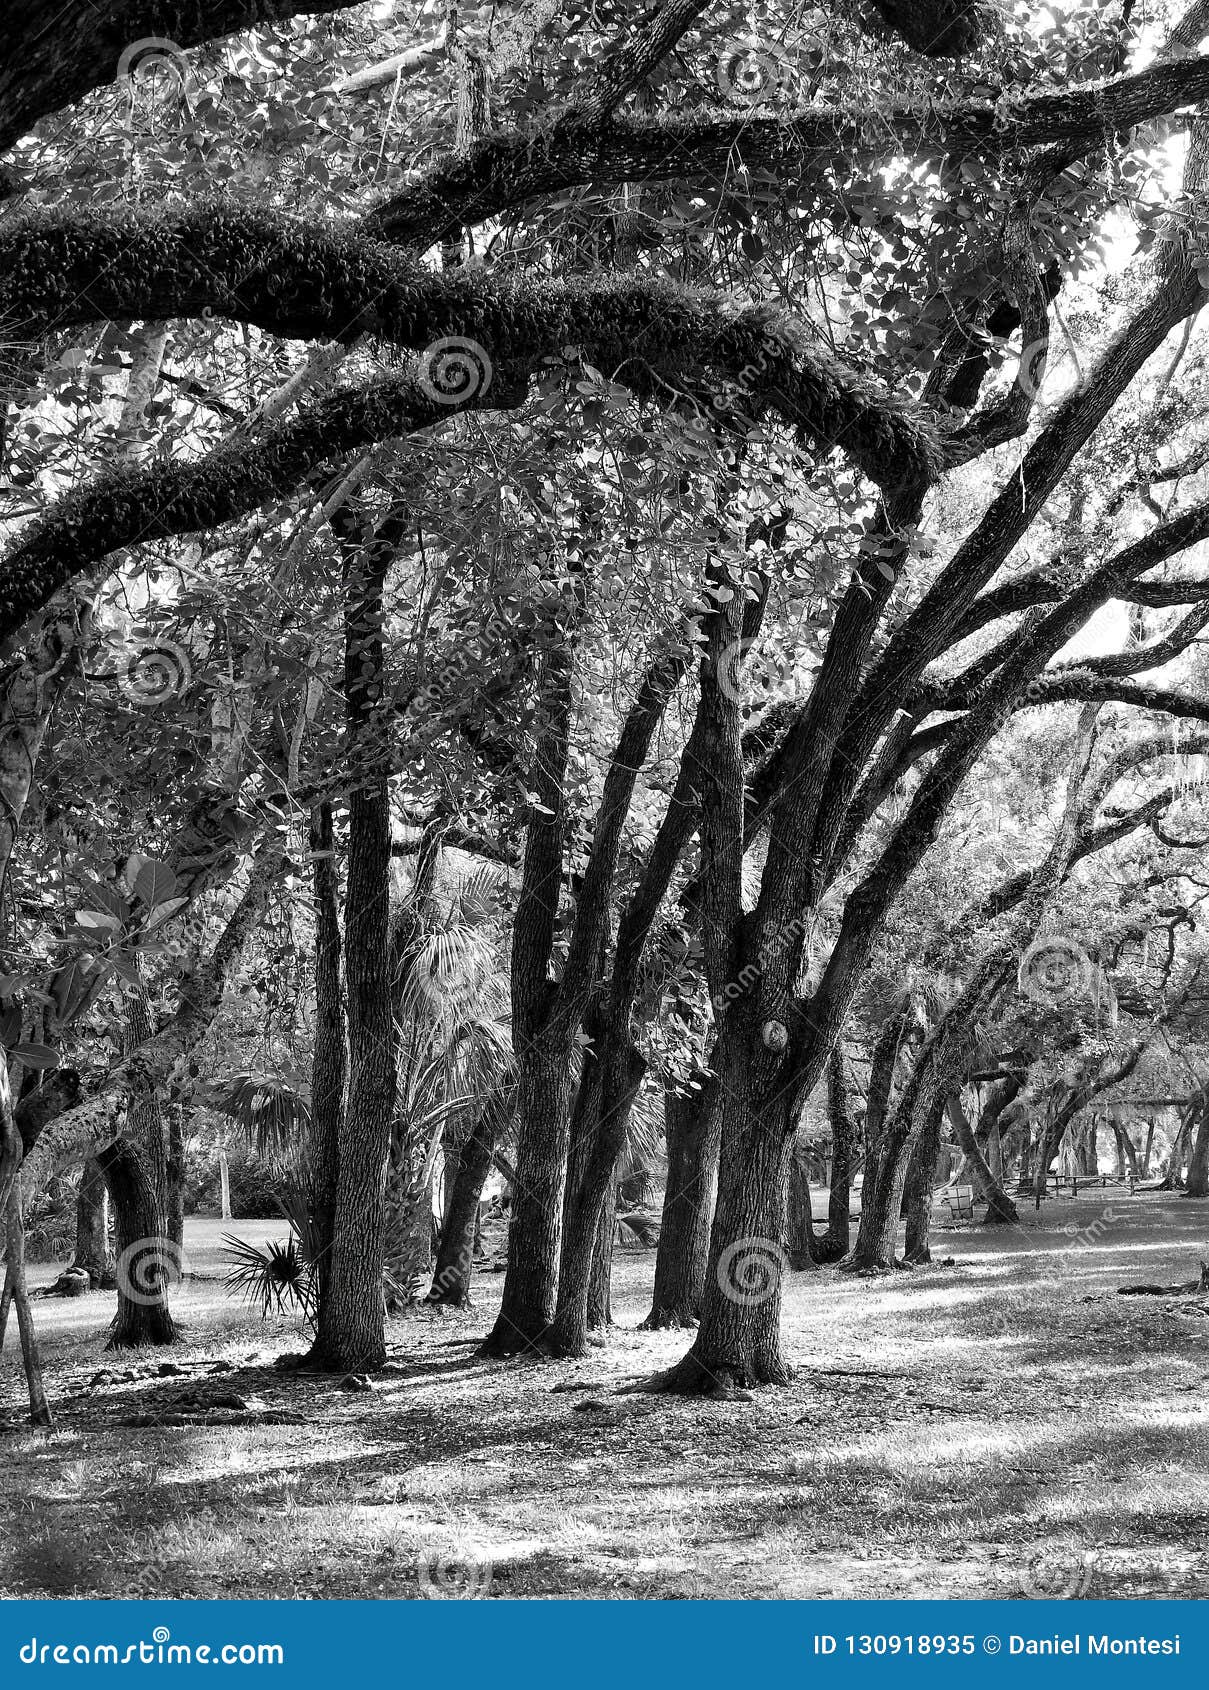 hurricane bent oak trees